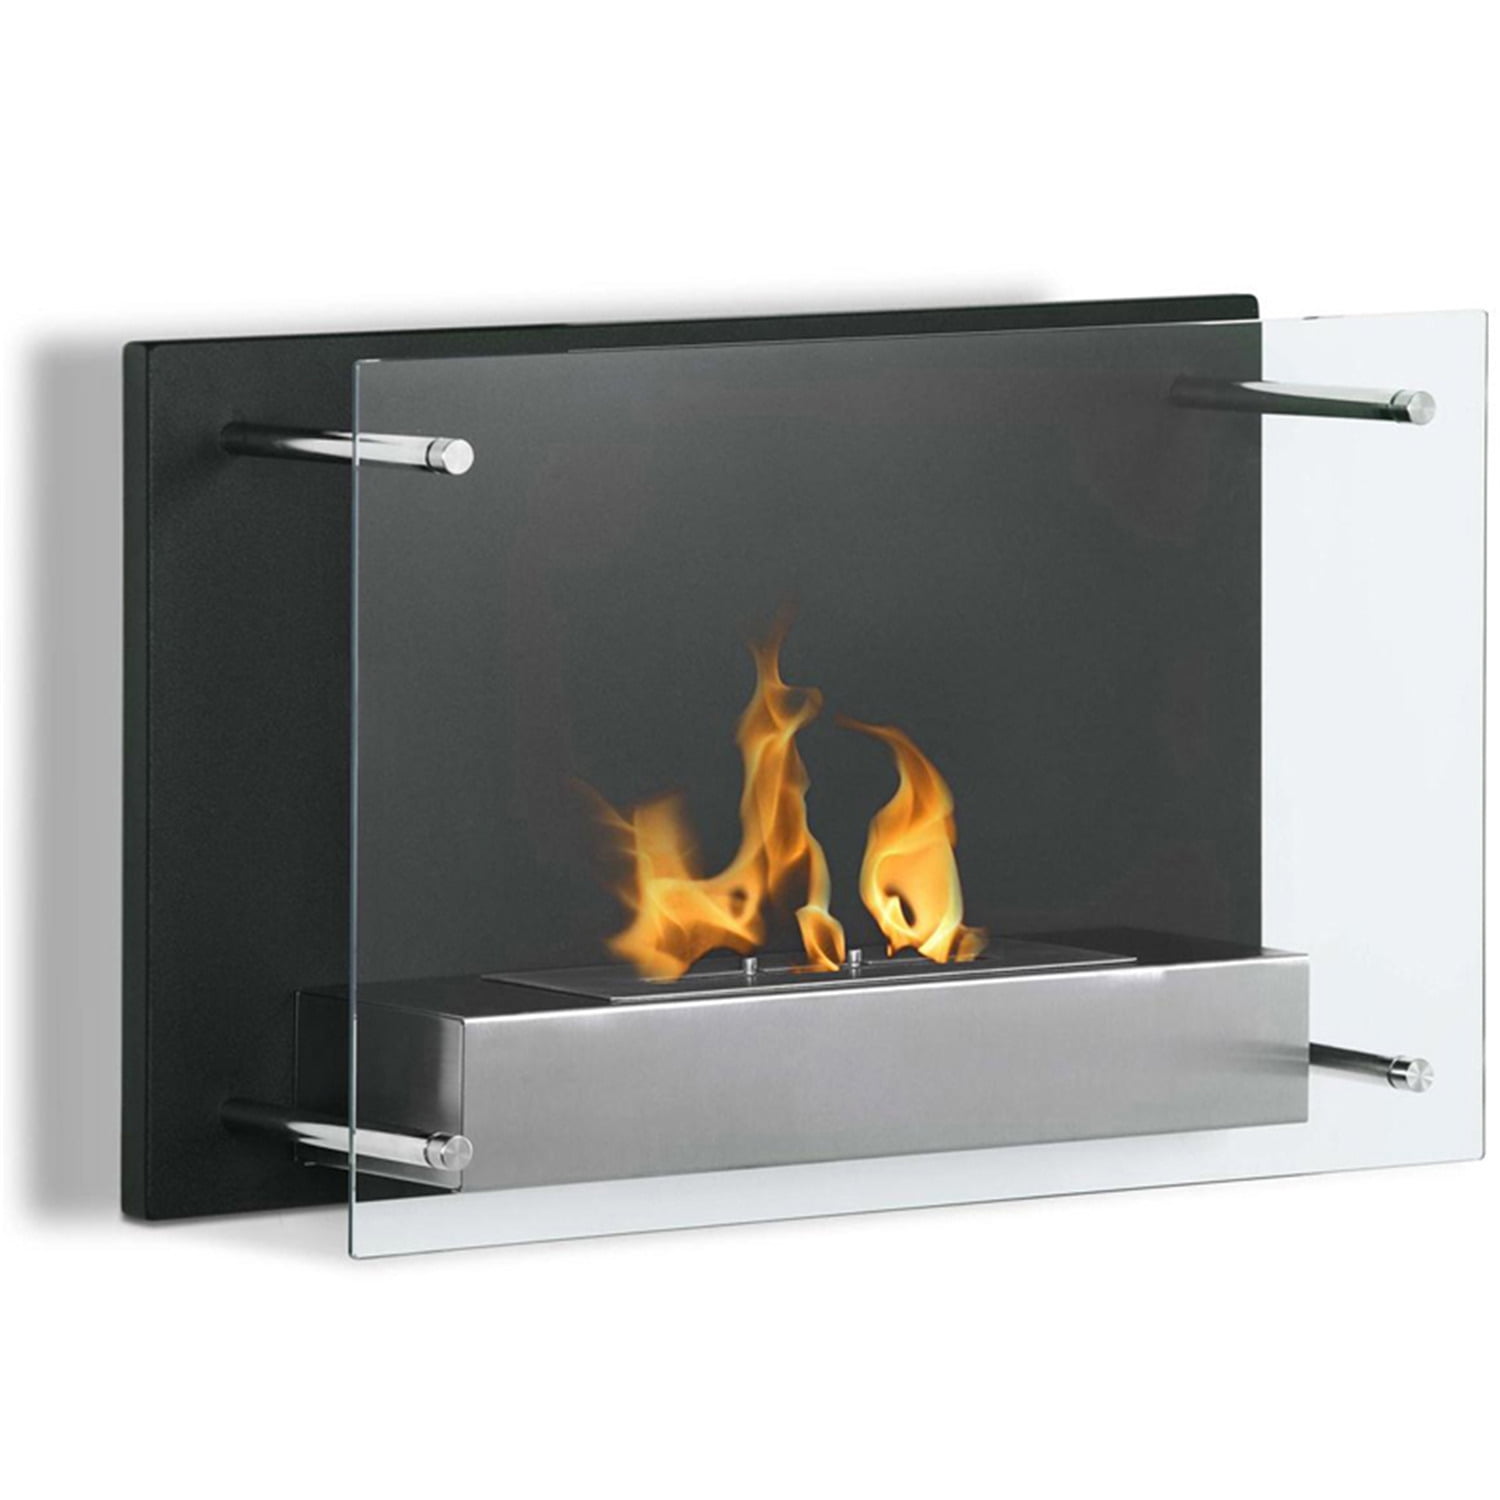 Regal Flame Elite Milan Ventless Bio Ethanol Wall Mounted Fireplace